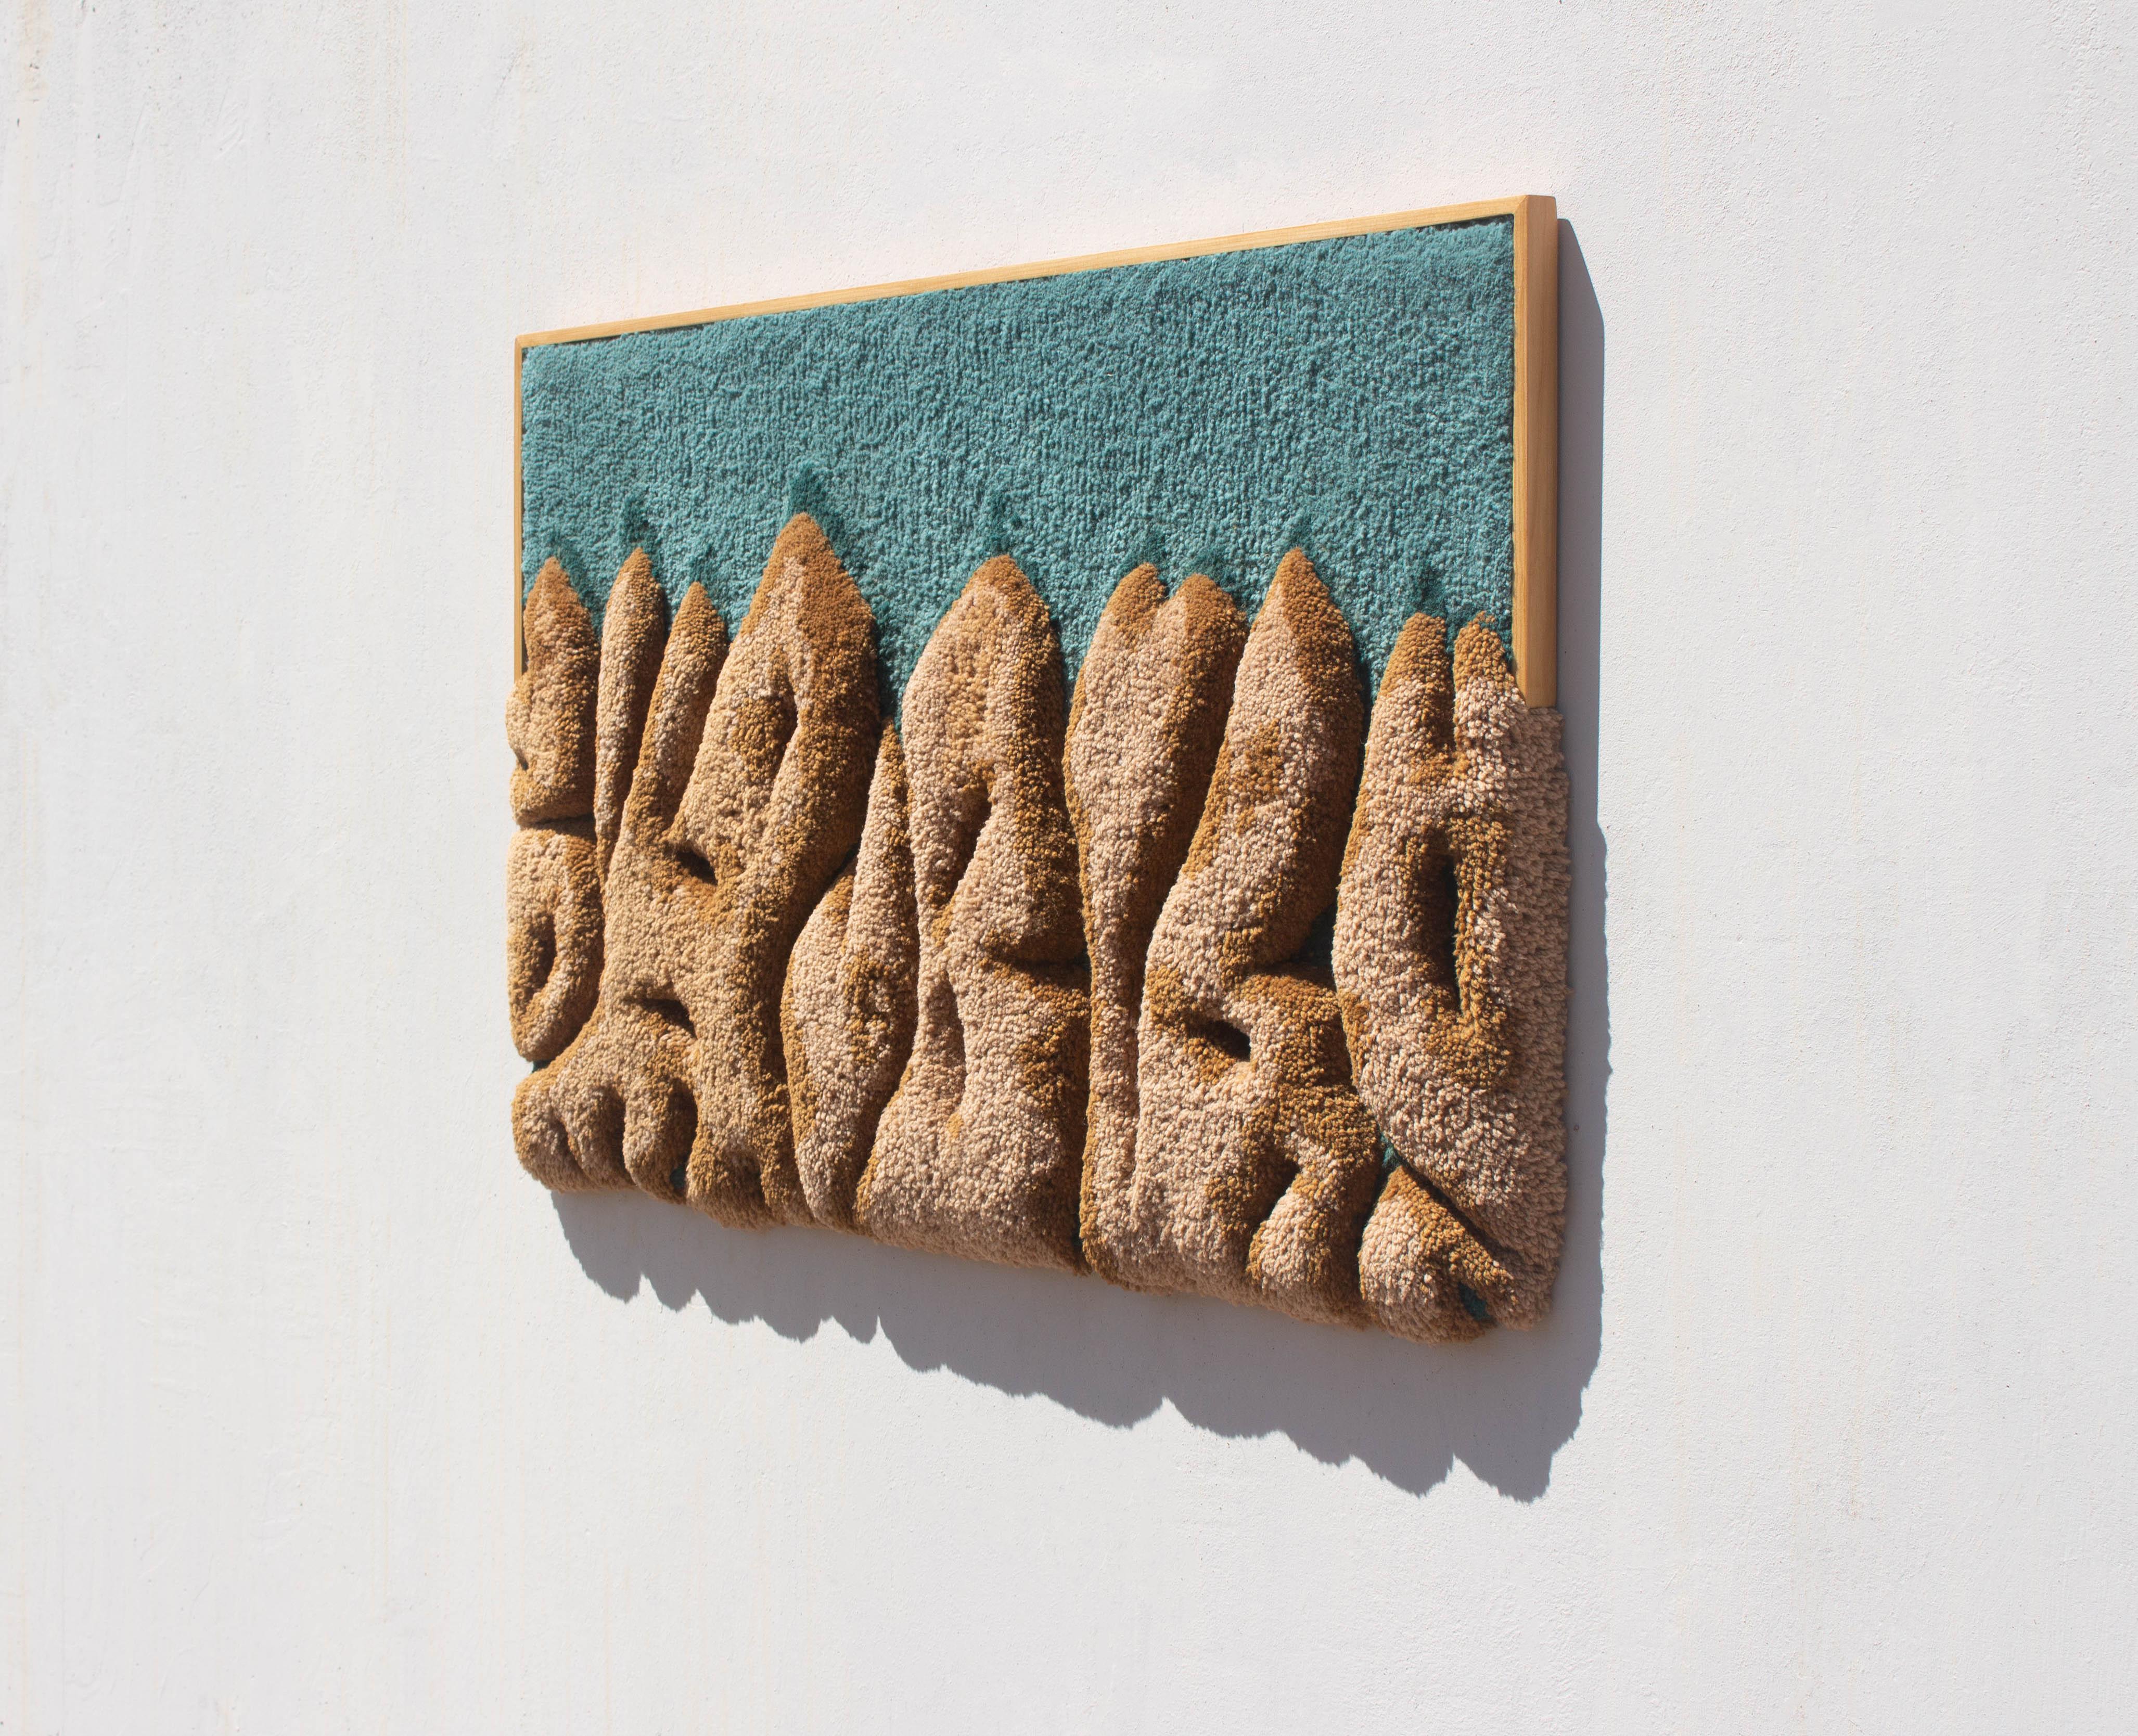 DUNAS TAPESTRY  ist ein einzigartiges zeitgenössisches Kunstwerk, das  eine Stranddünenlandschaft. Jeden Tag bringen die Gezeiten und der Wind neue Sandstrukturen und -formen an die wunderschönen portugiesischen Strände. Die Dünen spielen eine